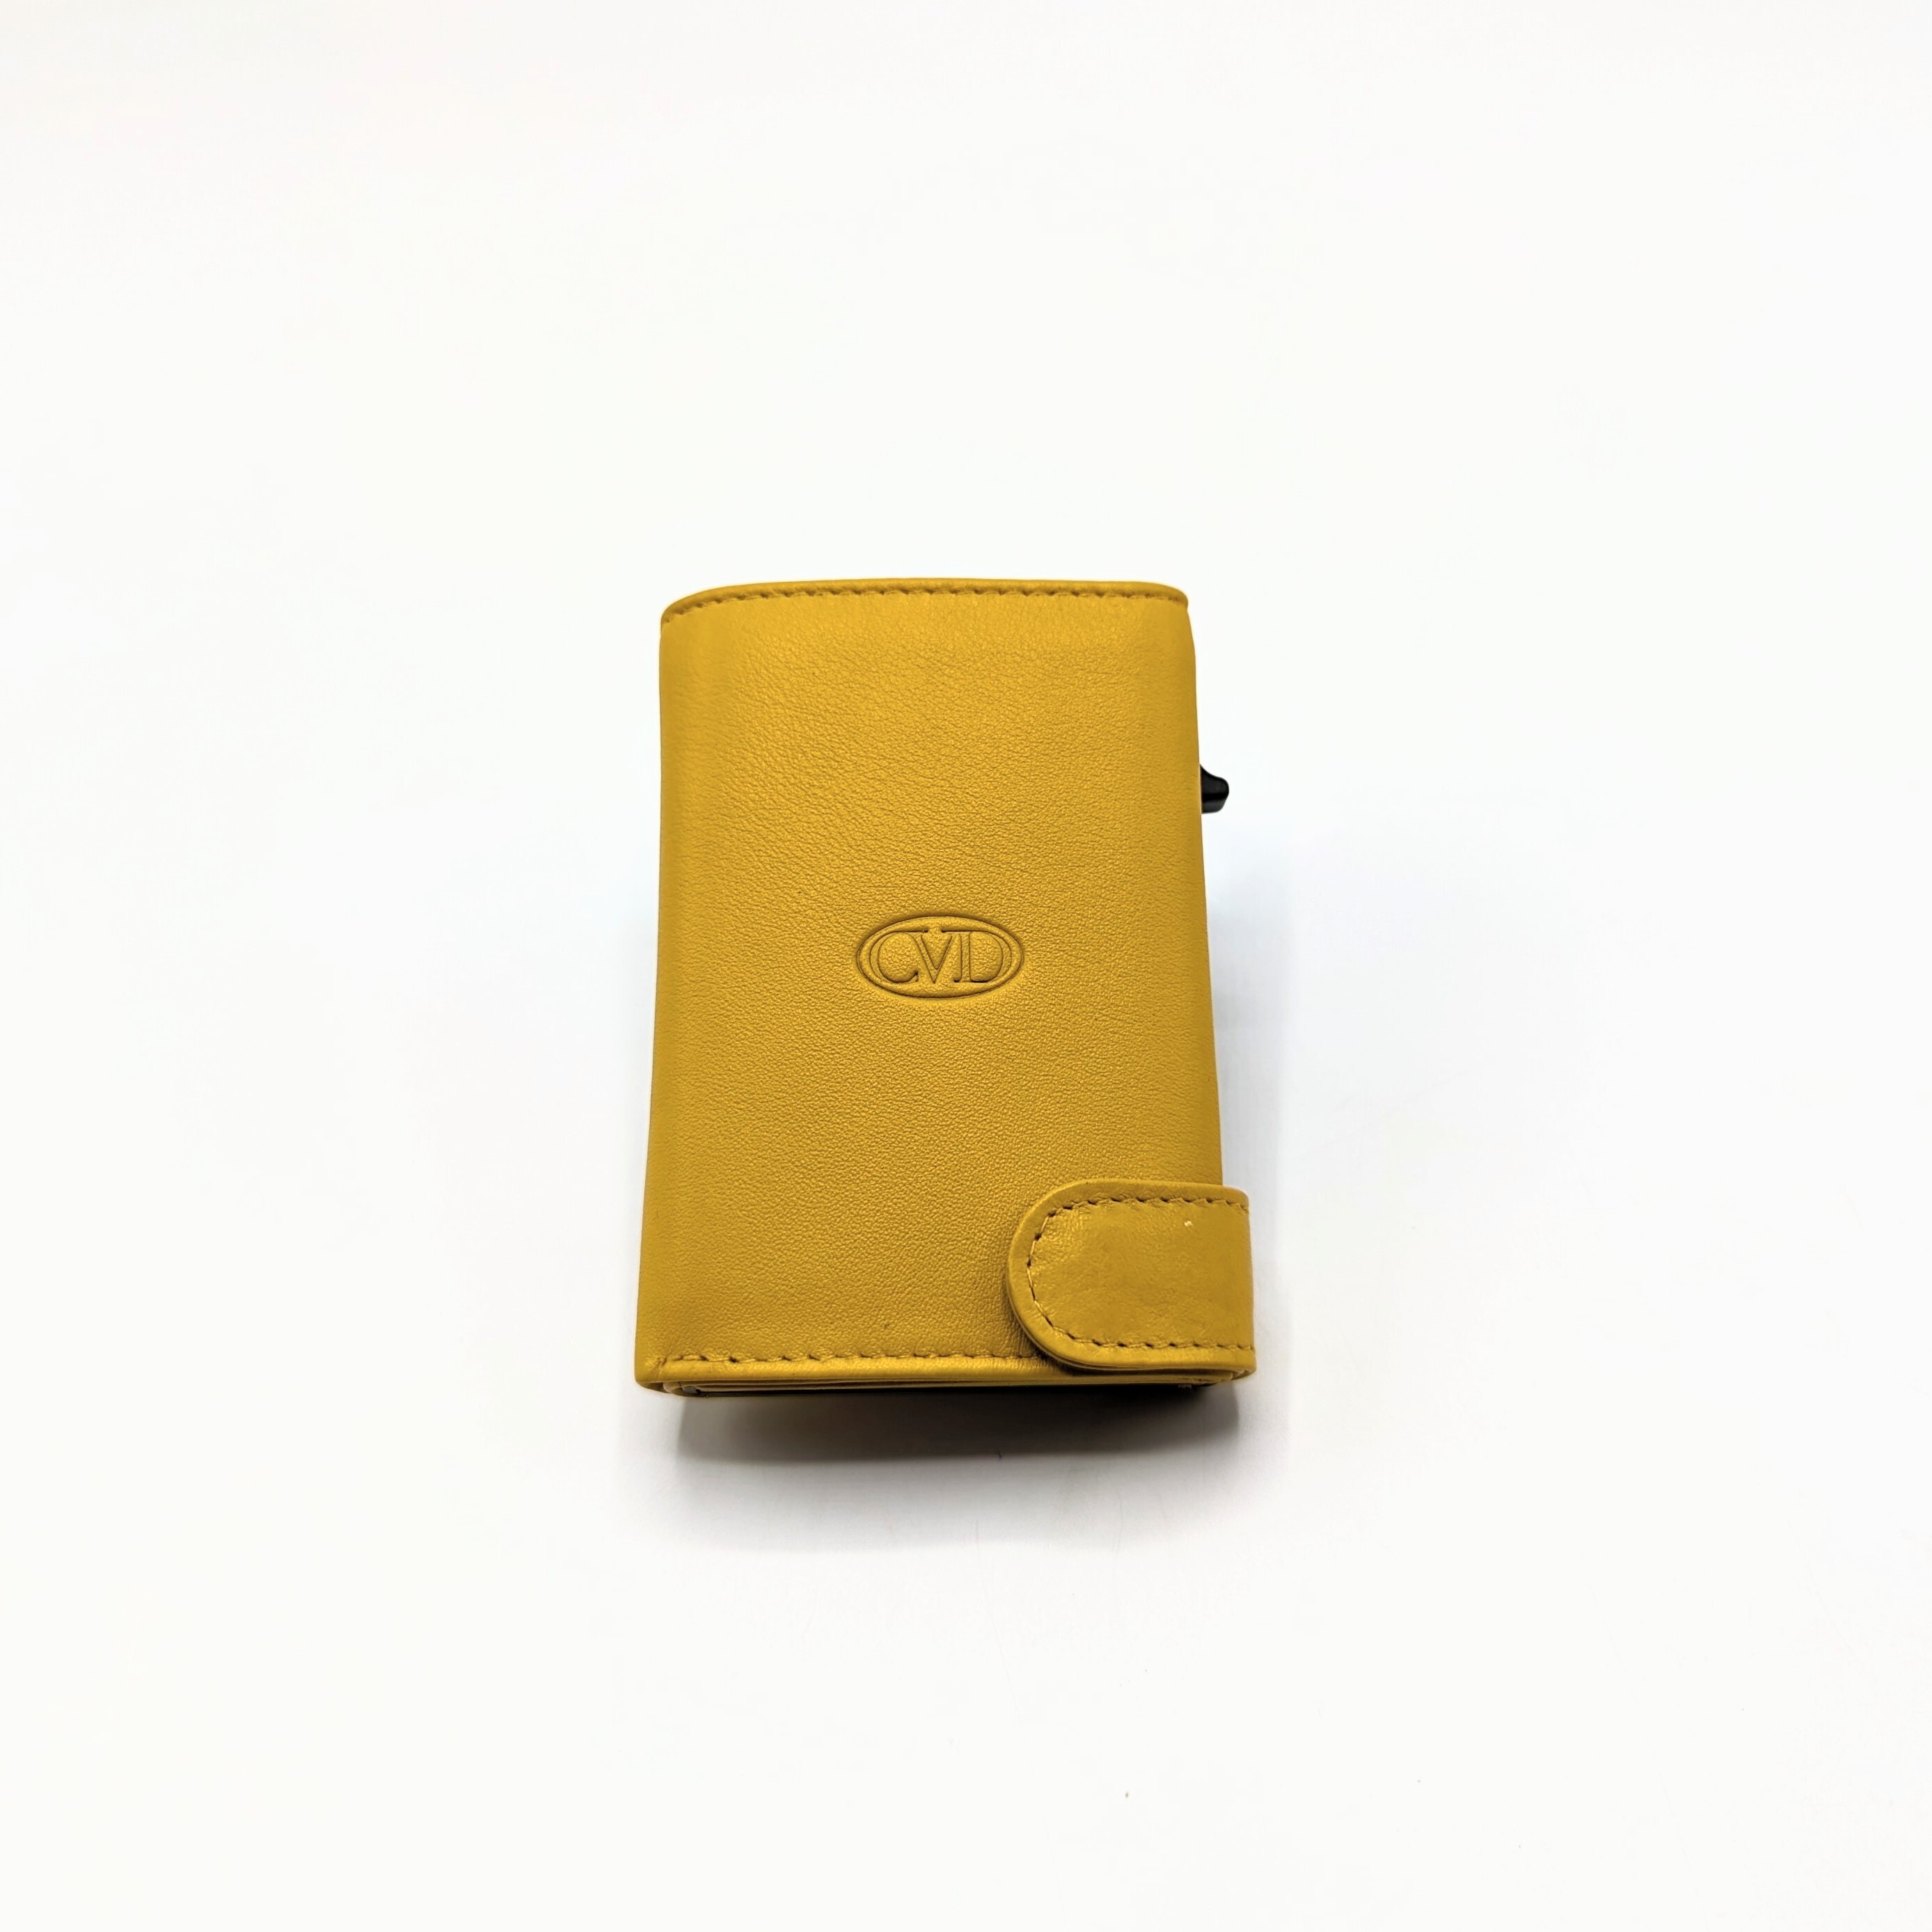 Portafoglio Unisex - Con estrazione Carte - CVD - Personalizzabile (più colori)